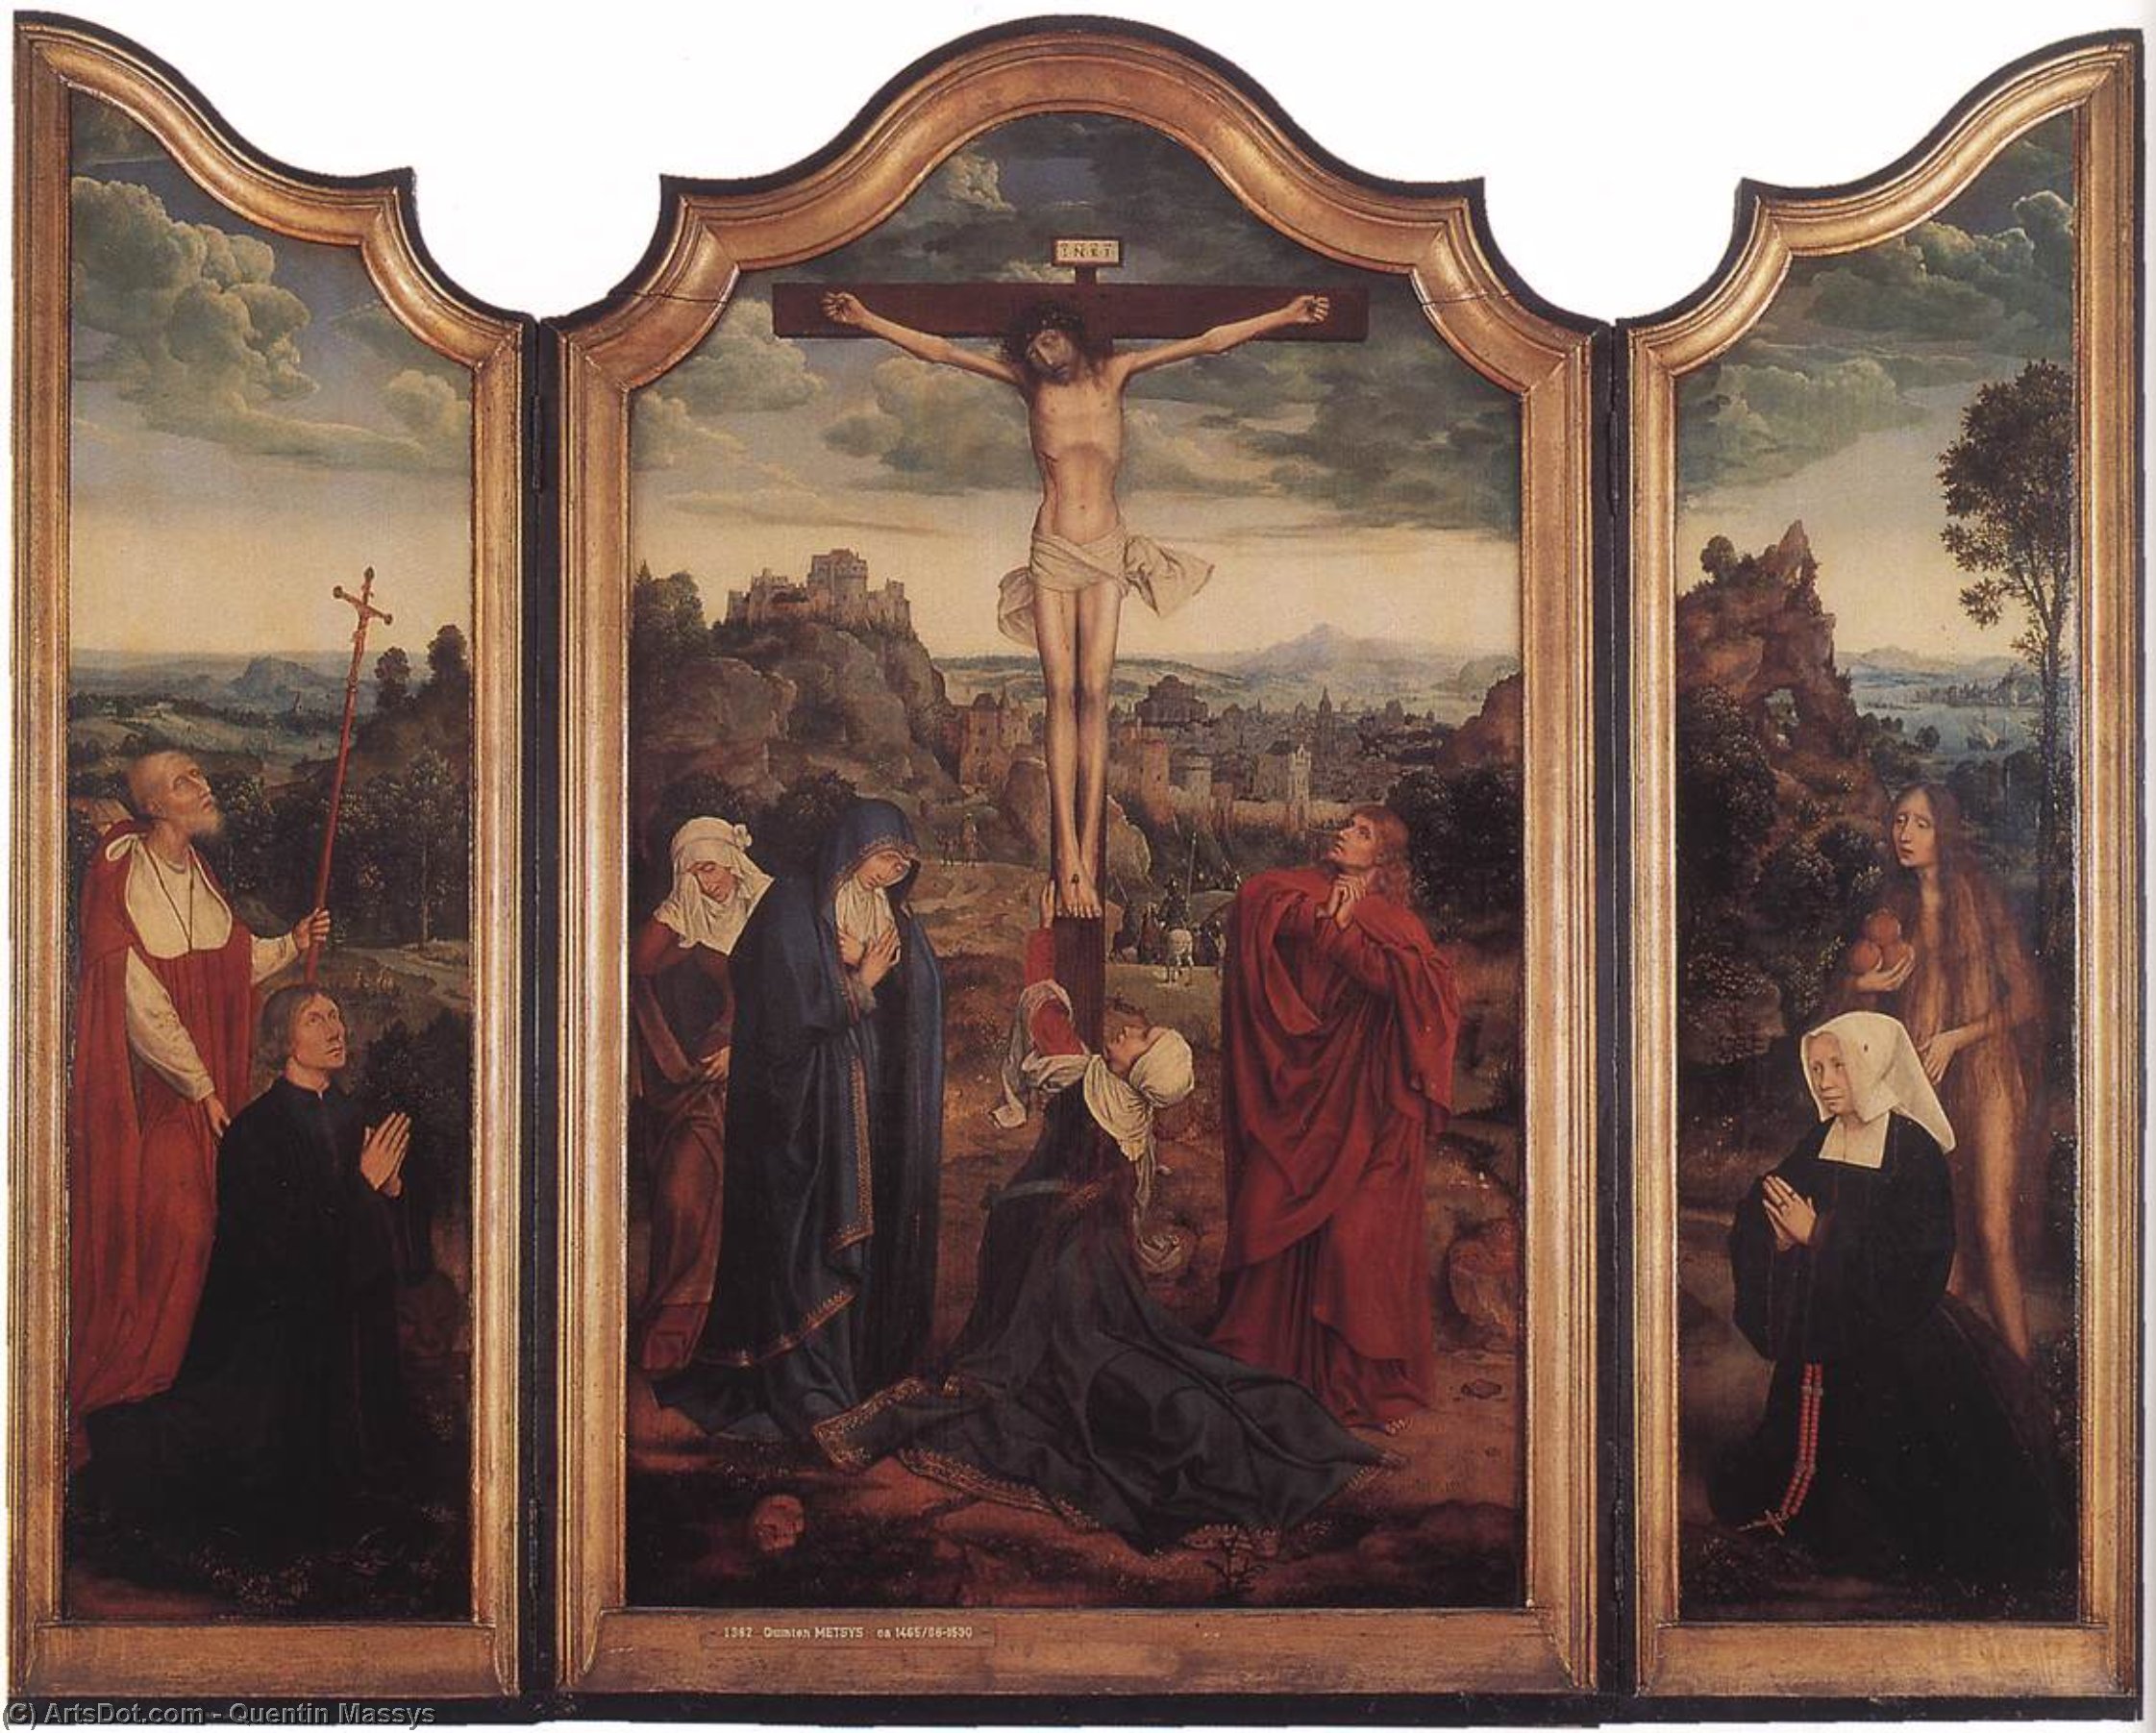 Comprar Reproducciones De Arte Del Museo Cristo en la Cruz con Donantes, 1520 de Quentin Massys (1466-1530, Belgium) | ArtsDot.com